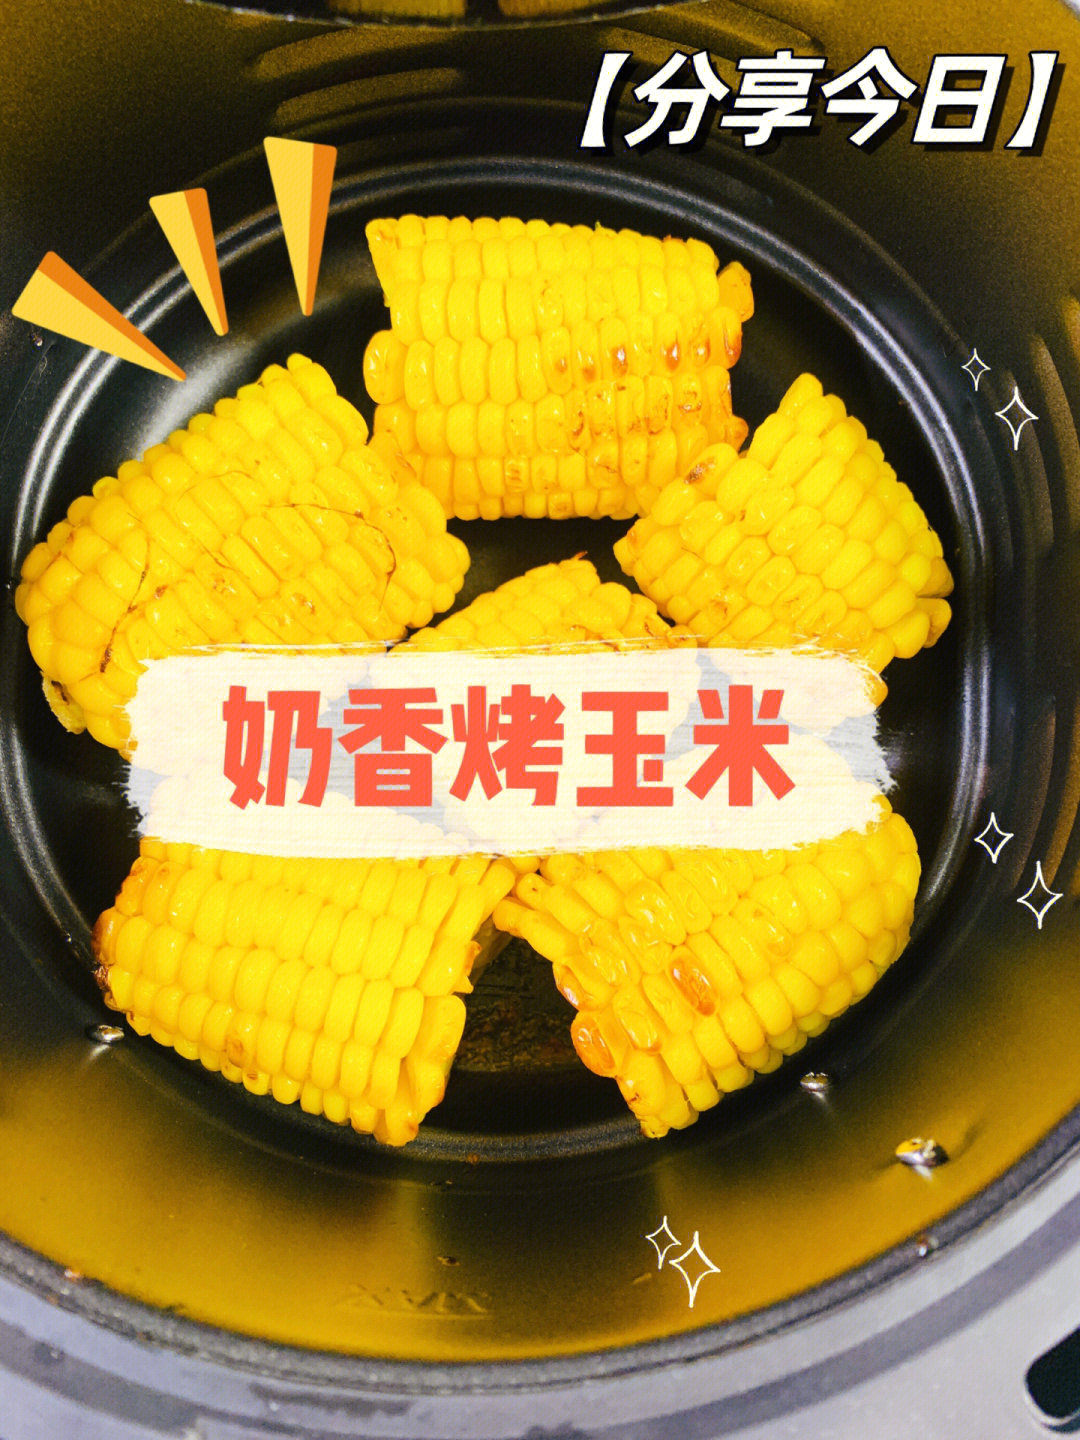 黄油玉米空气炸锅图片